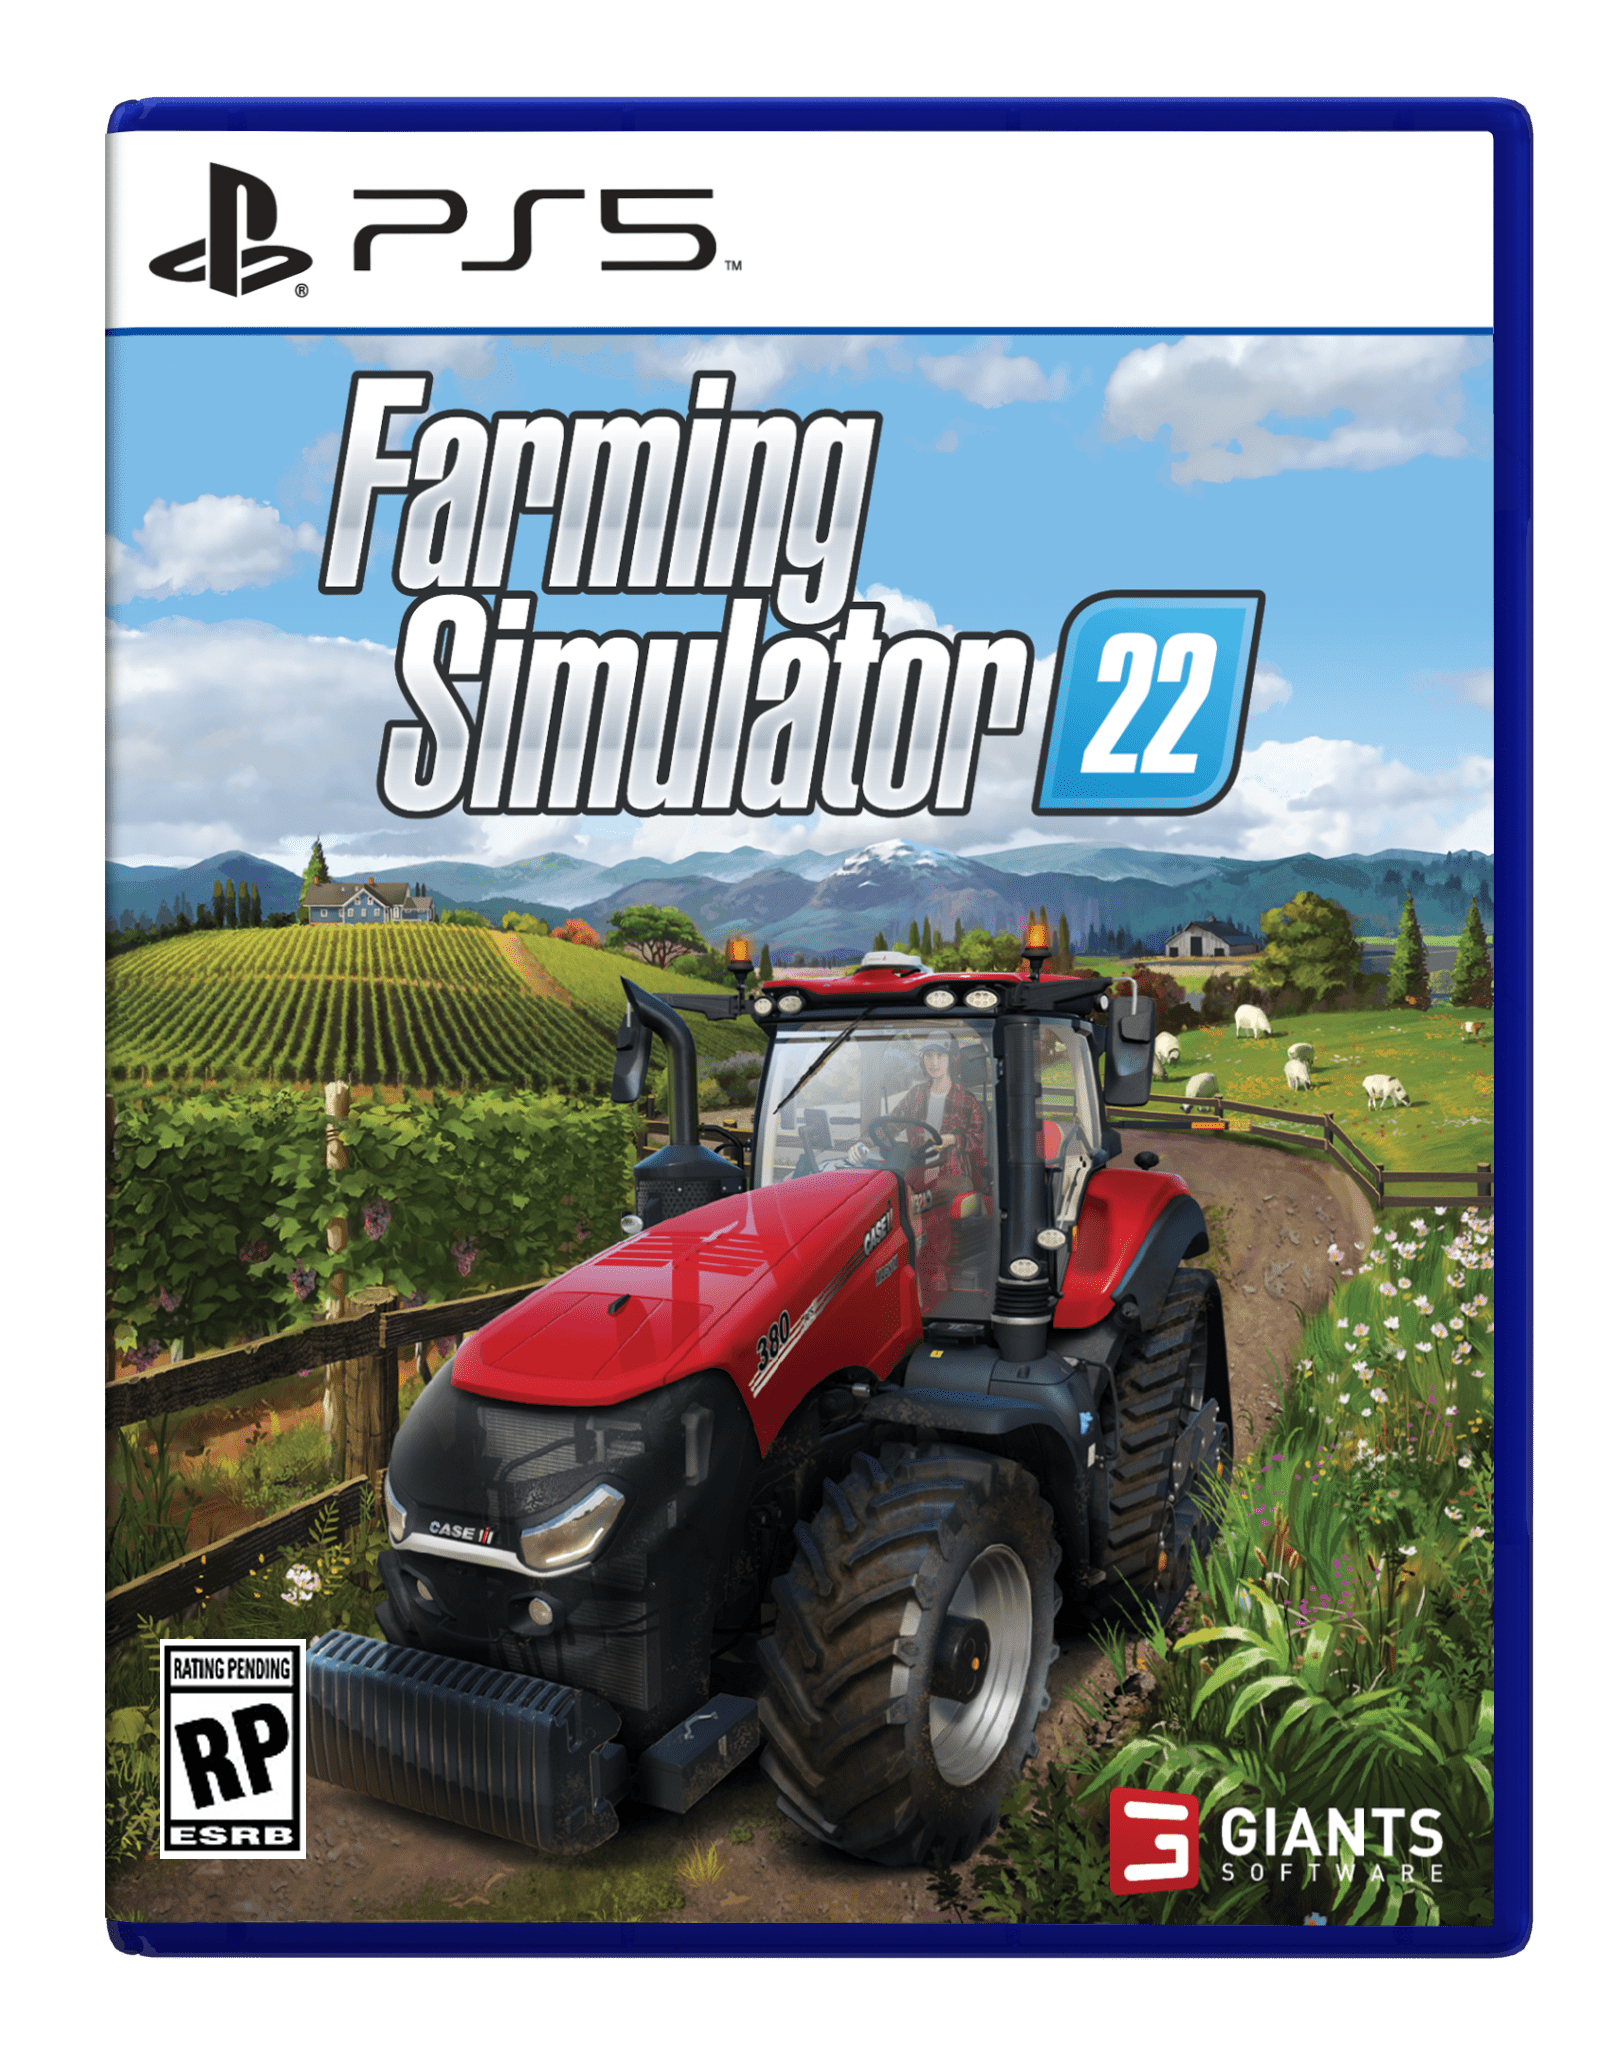 Hunting Simulator 2 PS4 - PlayStation 4 : : Videogiochi